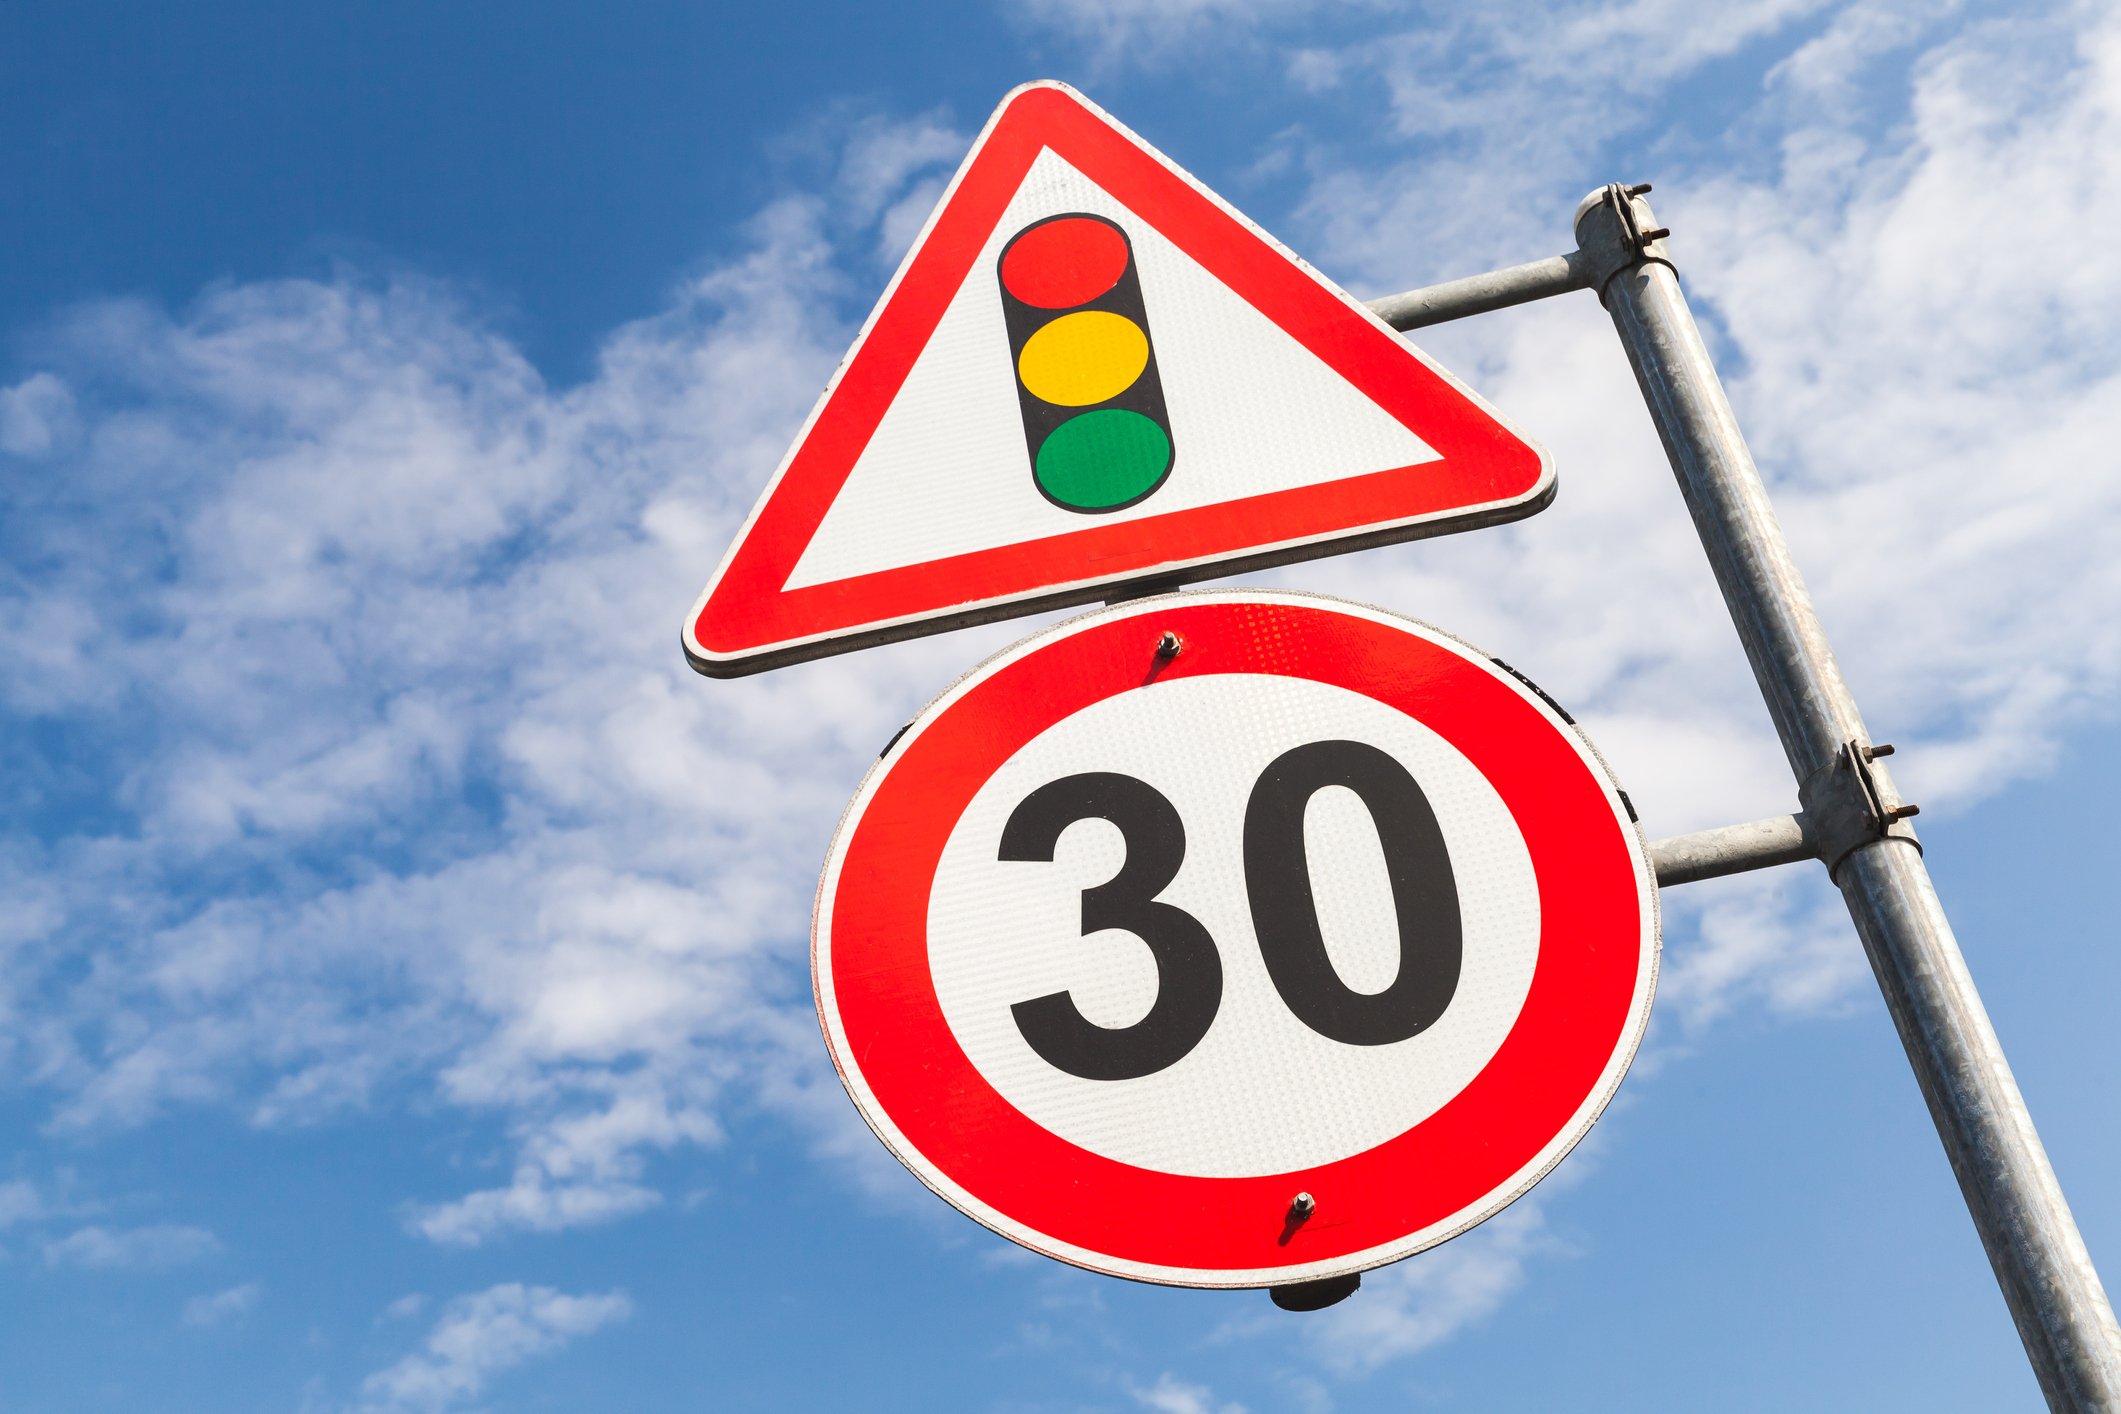 Nueva normativa: Se reduce a 30 km/h el límite de velocidad en las calles de un único carril